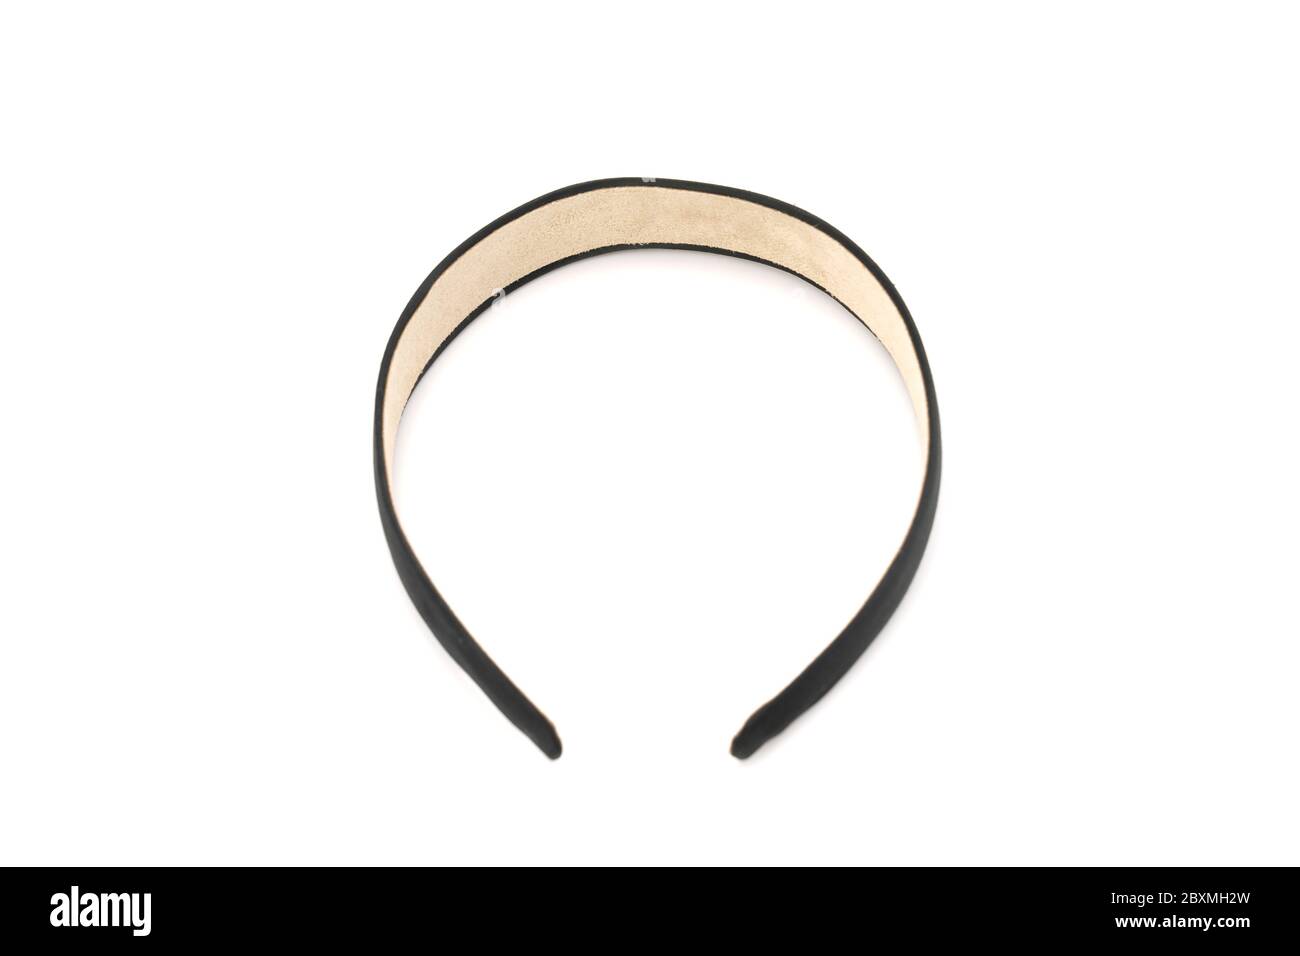 Isoliertes Schwarzes Haarband / Stirnband im Stuido-Licht mit weißem Hintergrund. Stockfoto